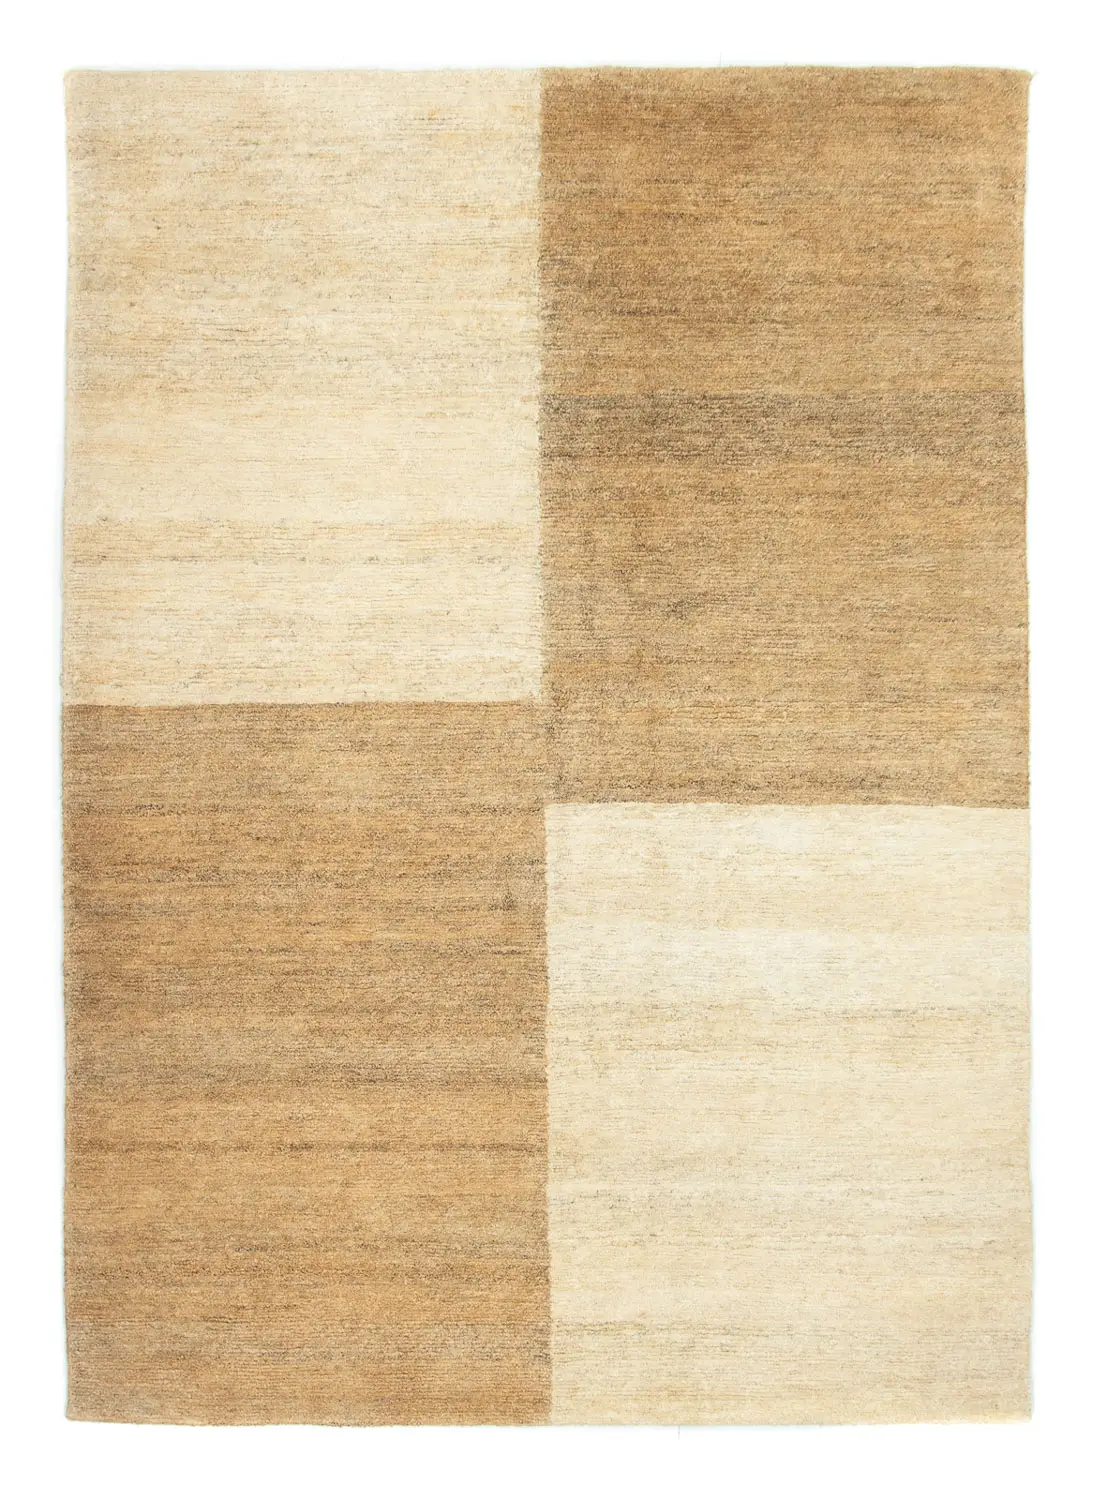 Nepal Teppich beige 146 201 x - - cm